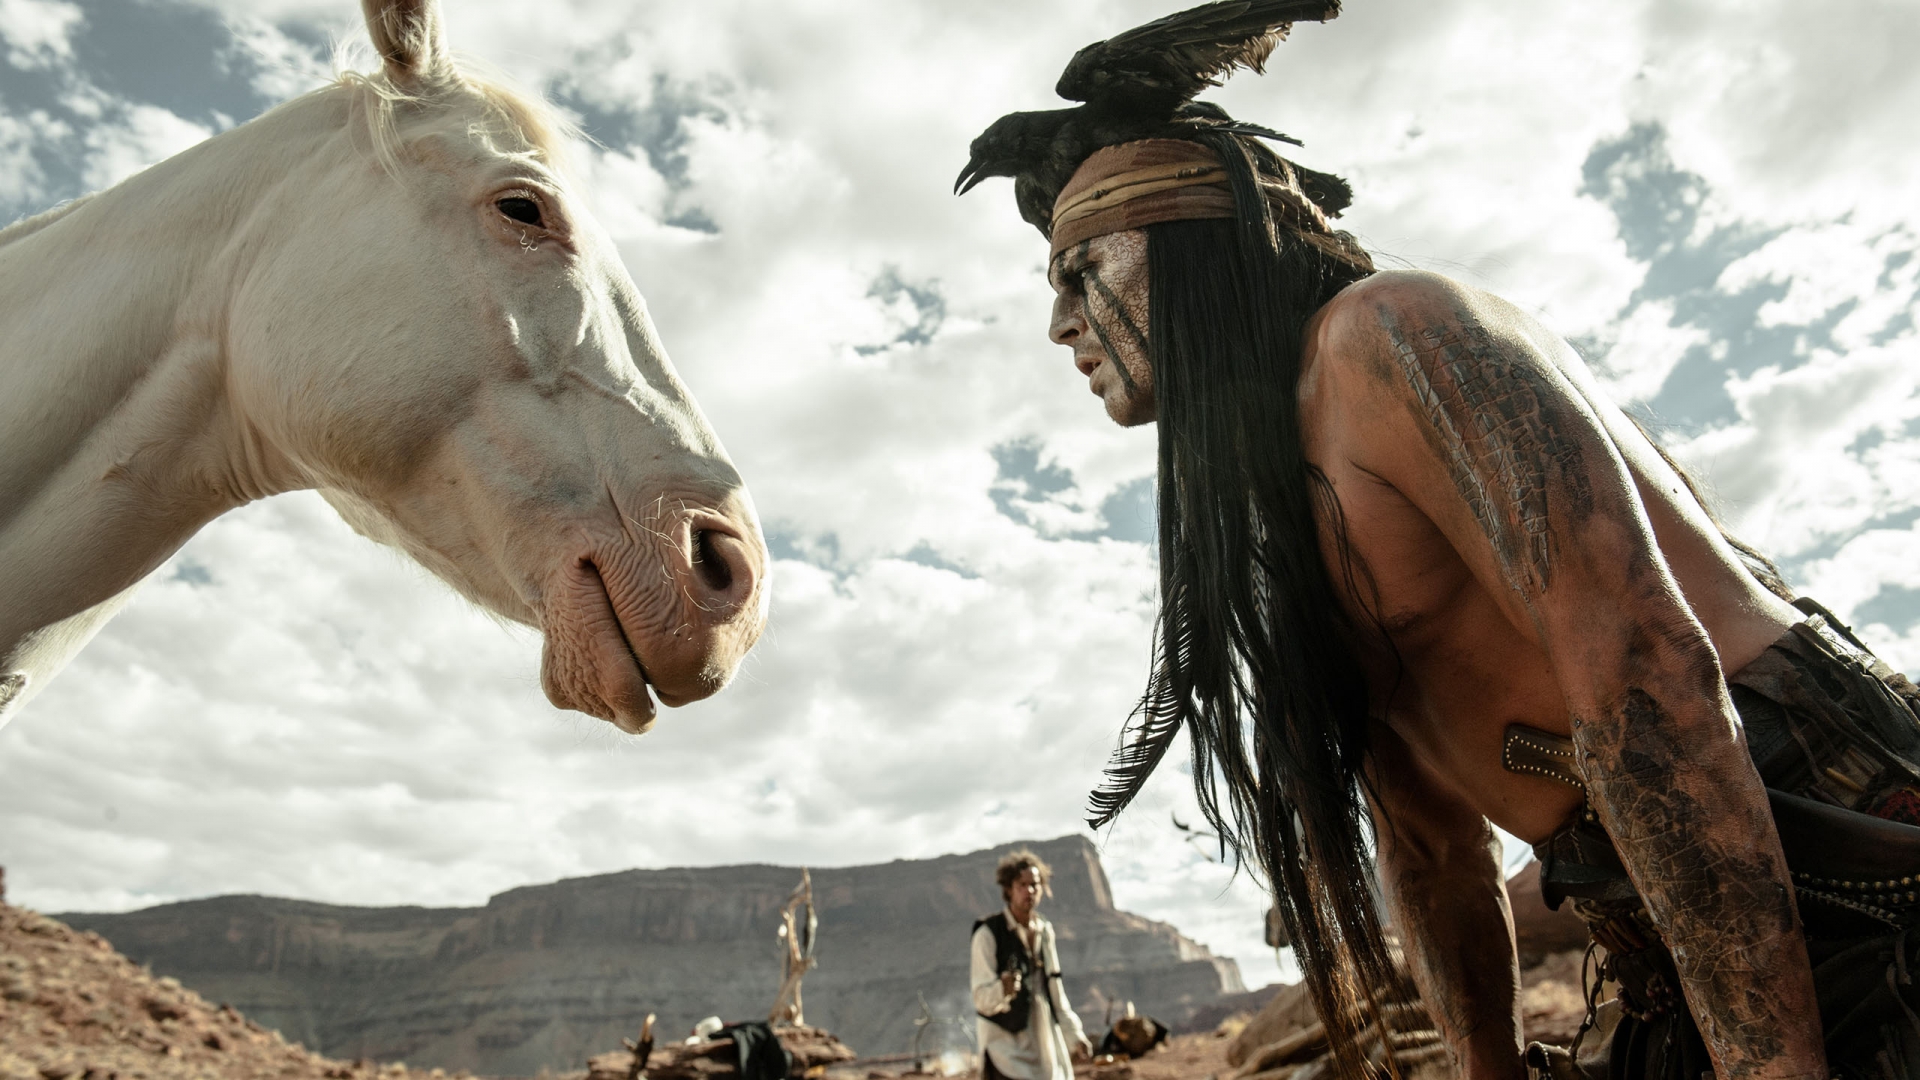 2013 The Lone Ranger Scene for 1920 x 1080 HDTV 1080p resolution